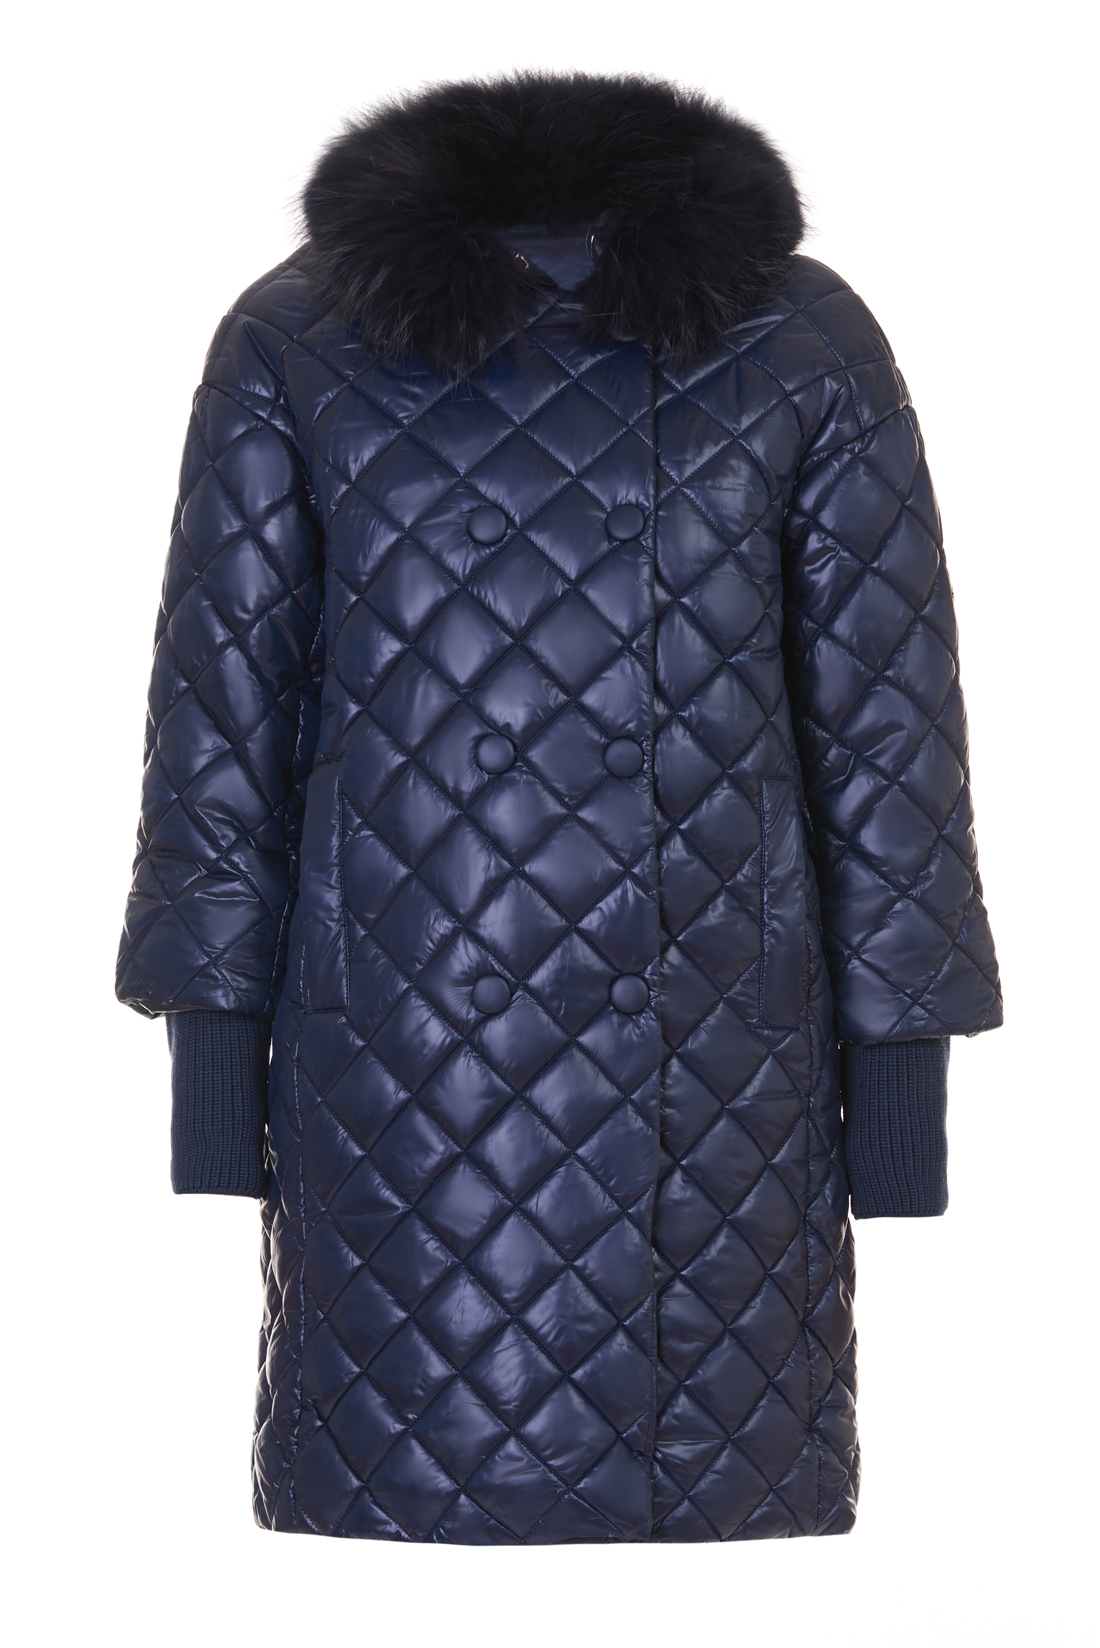 Куртка с меховым воротником и съёмными манжетами (арт. baon B037527), размер L, цвет синий Куртка с меховым воротником и съёмными манжетами (арт. baon B037527) - фото 3